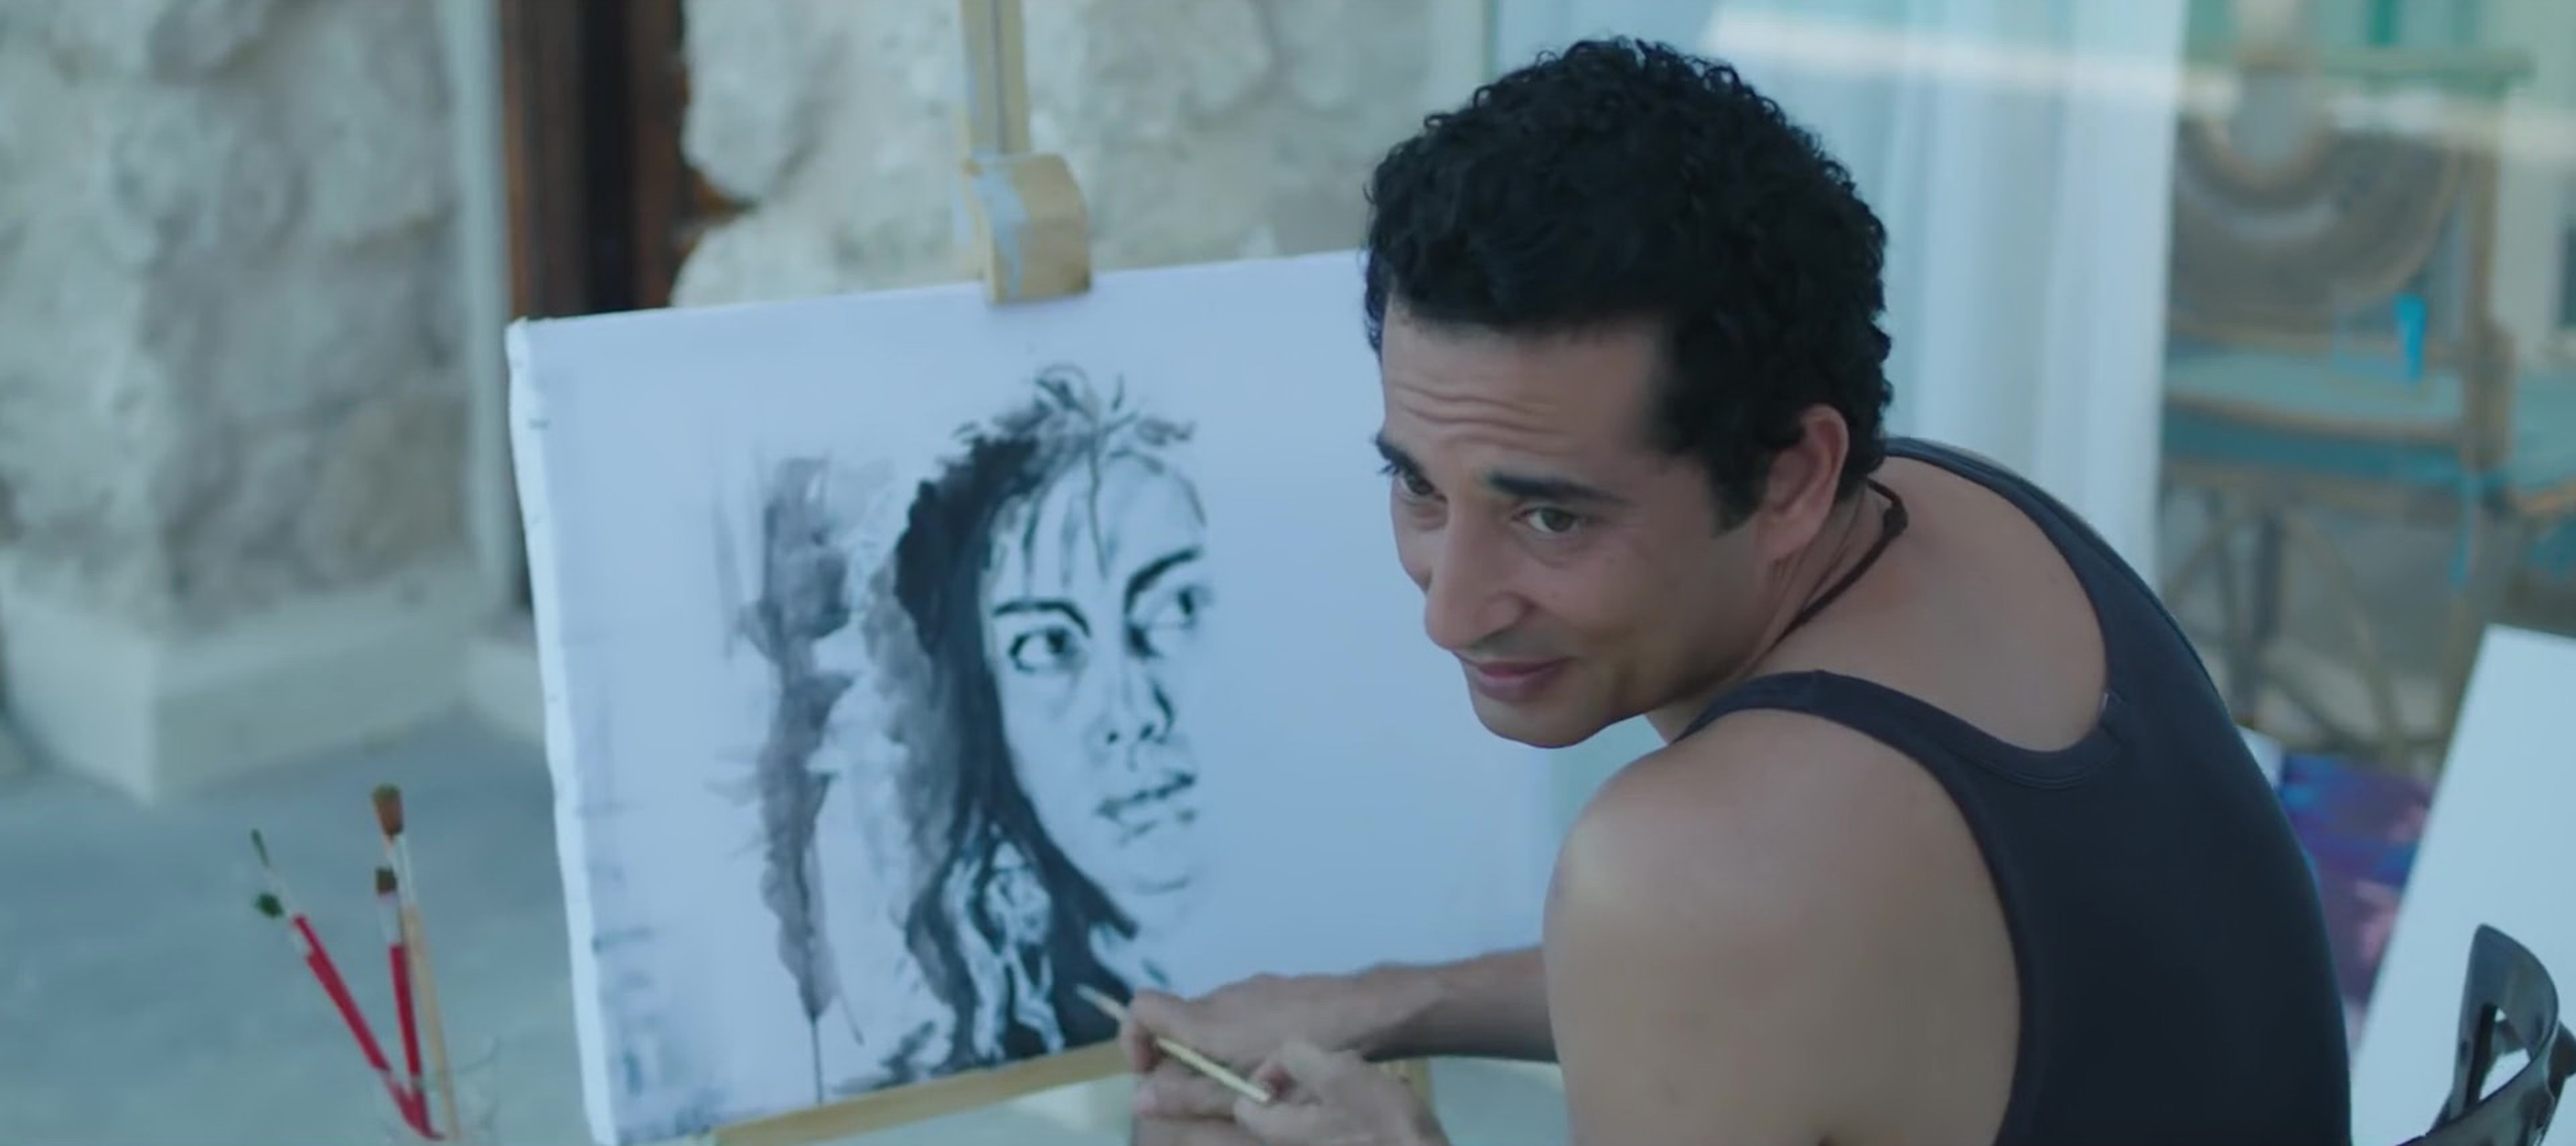 عمرو سعد يرسم حبيبته فى مسلسل "وضع امني"